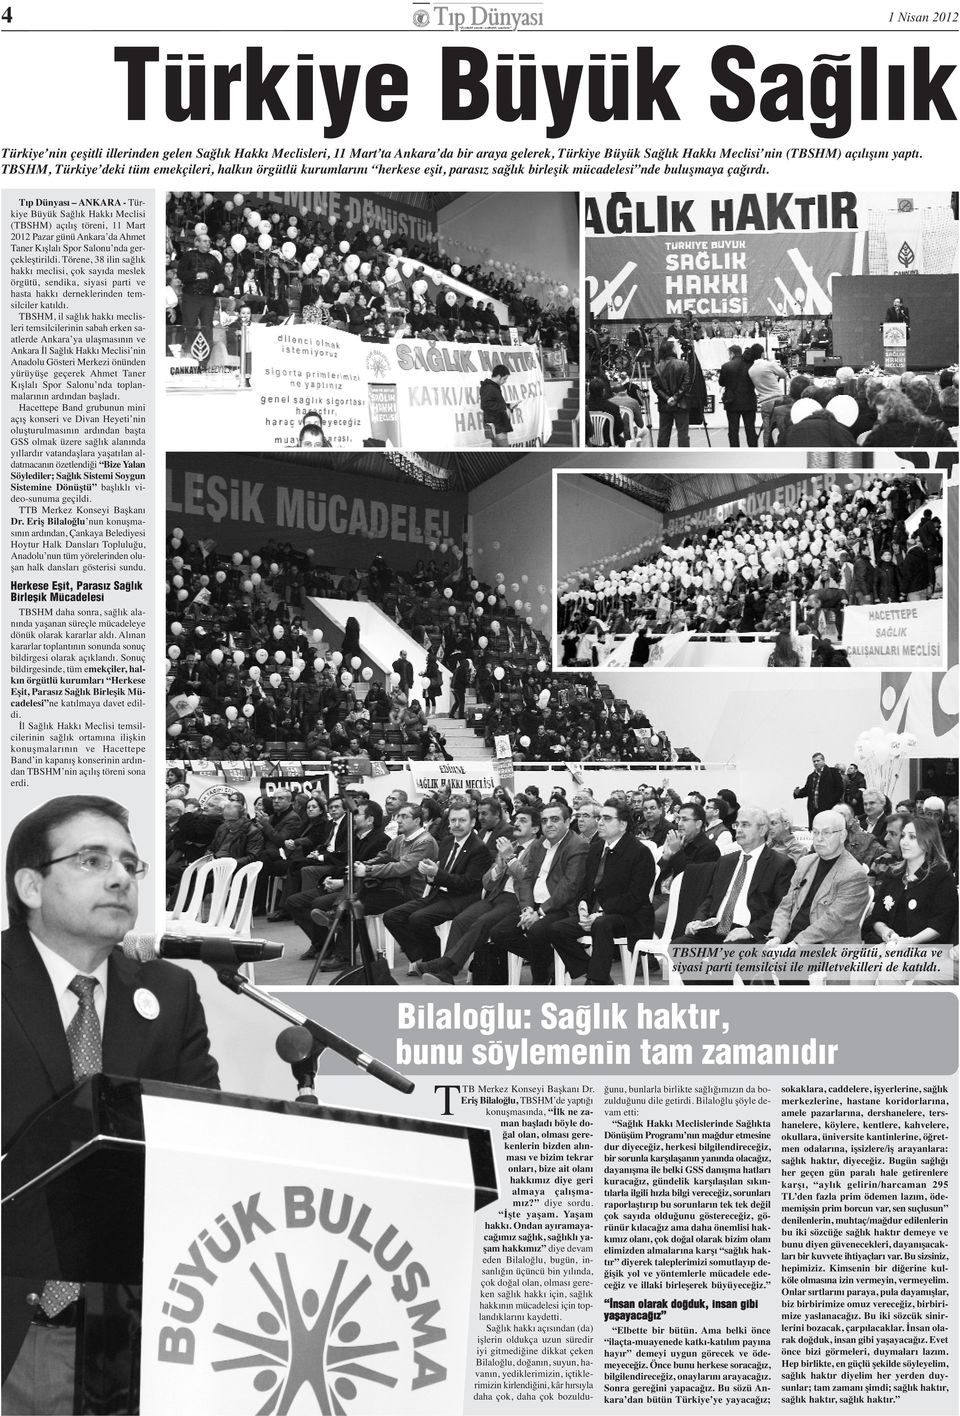 Tıp Dünyası ANKARA - Türkiye Büyük Sağlık Hakkı Meclisi (TBSHM) açılış töreni, 11 Mart 2012 Pazar günü Ankara da Ahmet Taner Kışlalı Spor Salonu nda gerçekleştirildi.